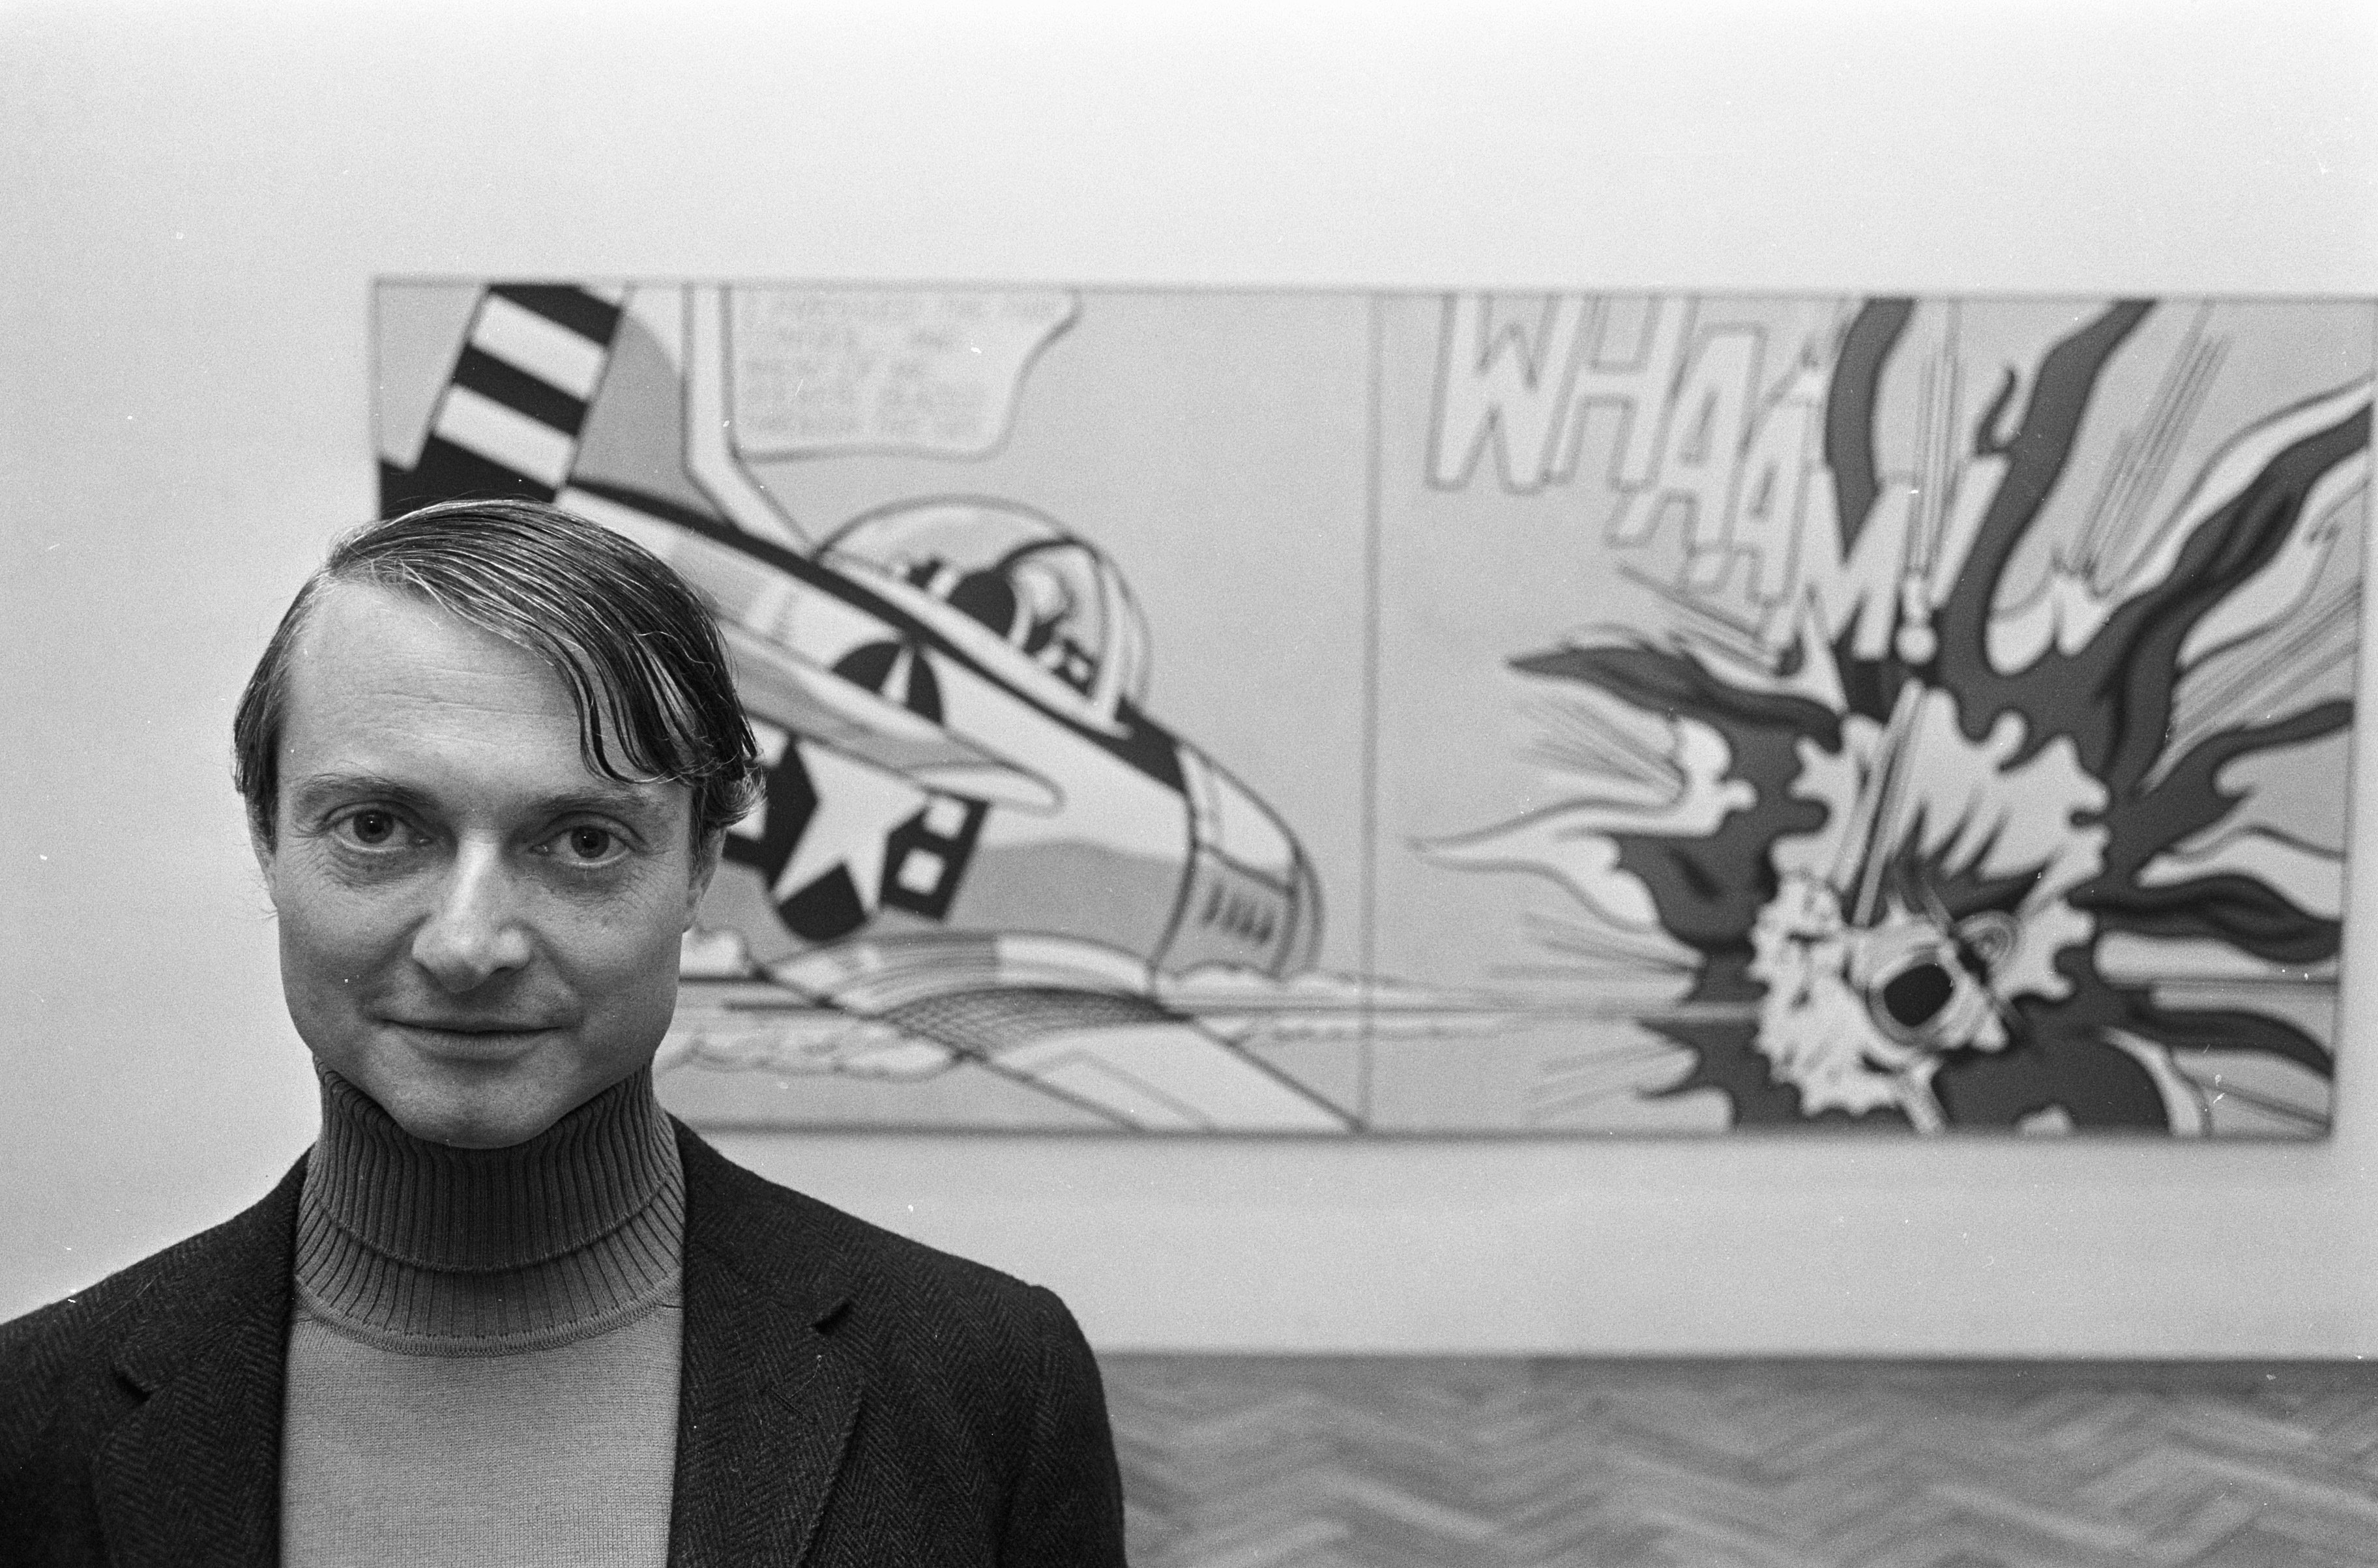 auteur Roy Lichtenstein de la citation Pollock a vraiment inventé quelque chose. Personne n'a peint comme lui - ou de kooning ou encore.